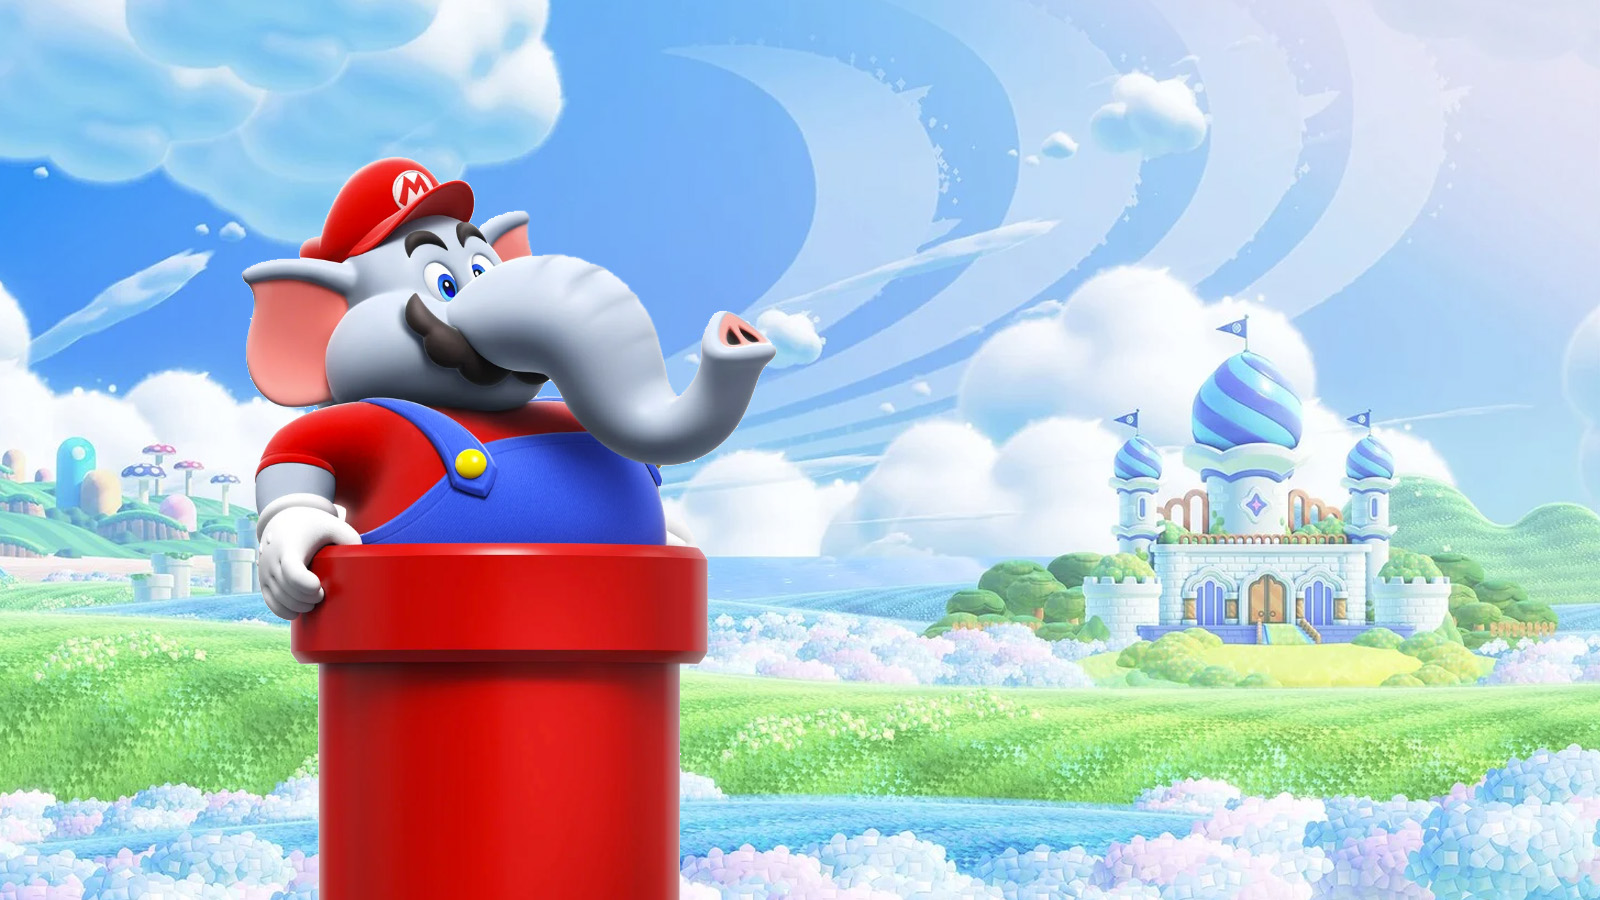 Super Mario Bros. Wonder Review: Weird and Wonderful